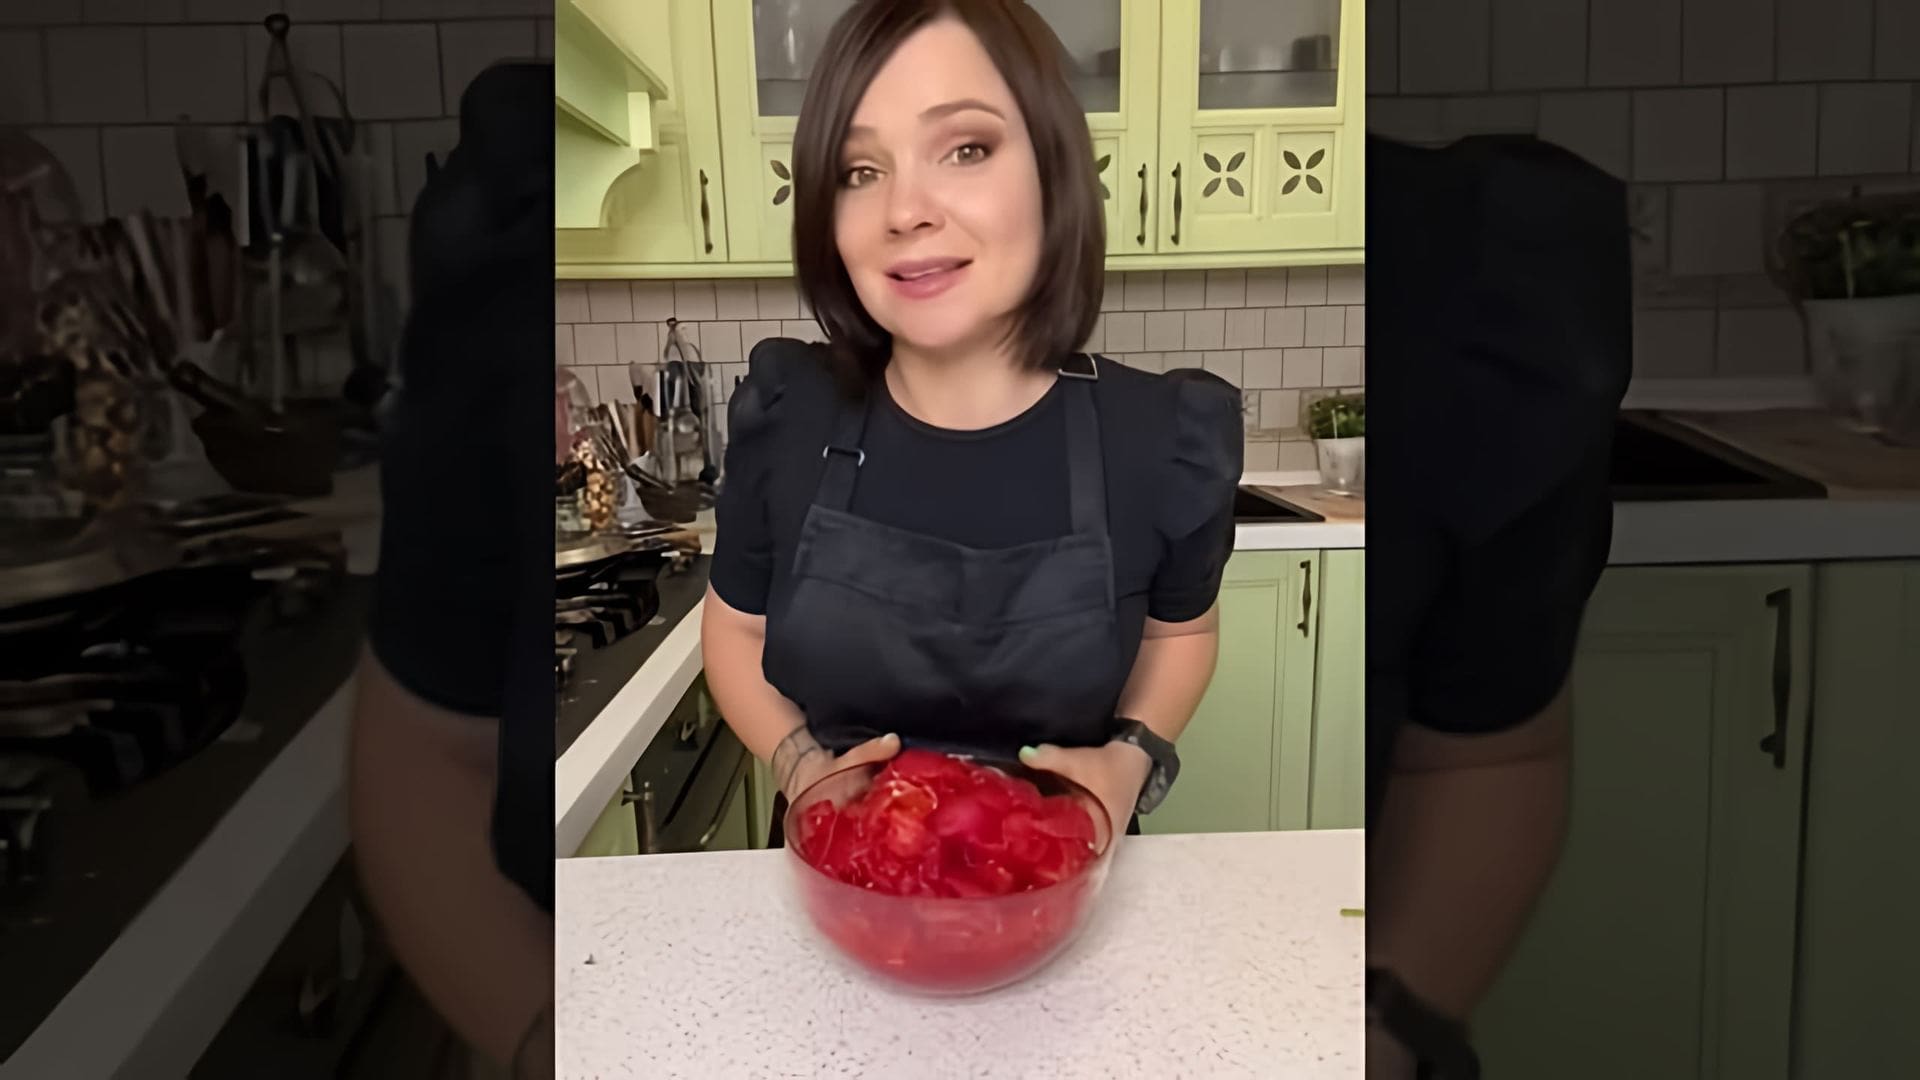 Видео посвящено приготовлению венгерского томатного соуса/рагу по имени лечо